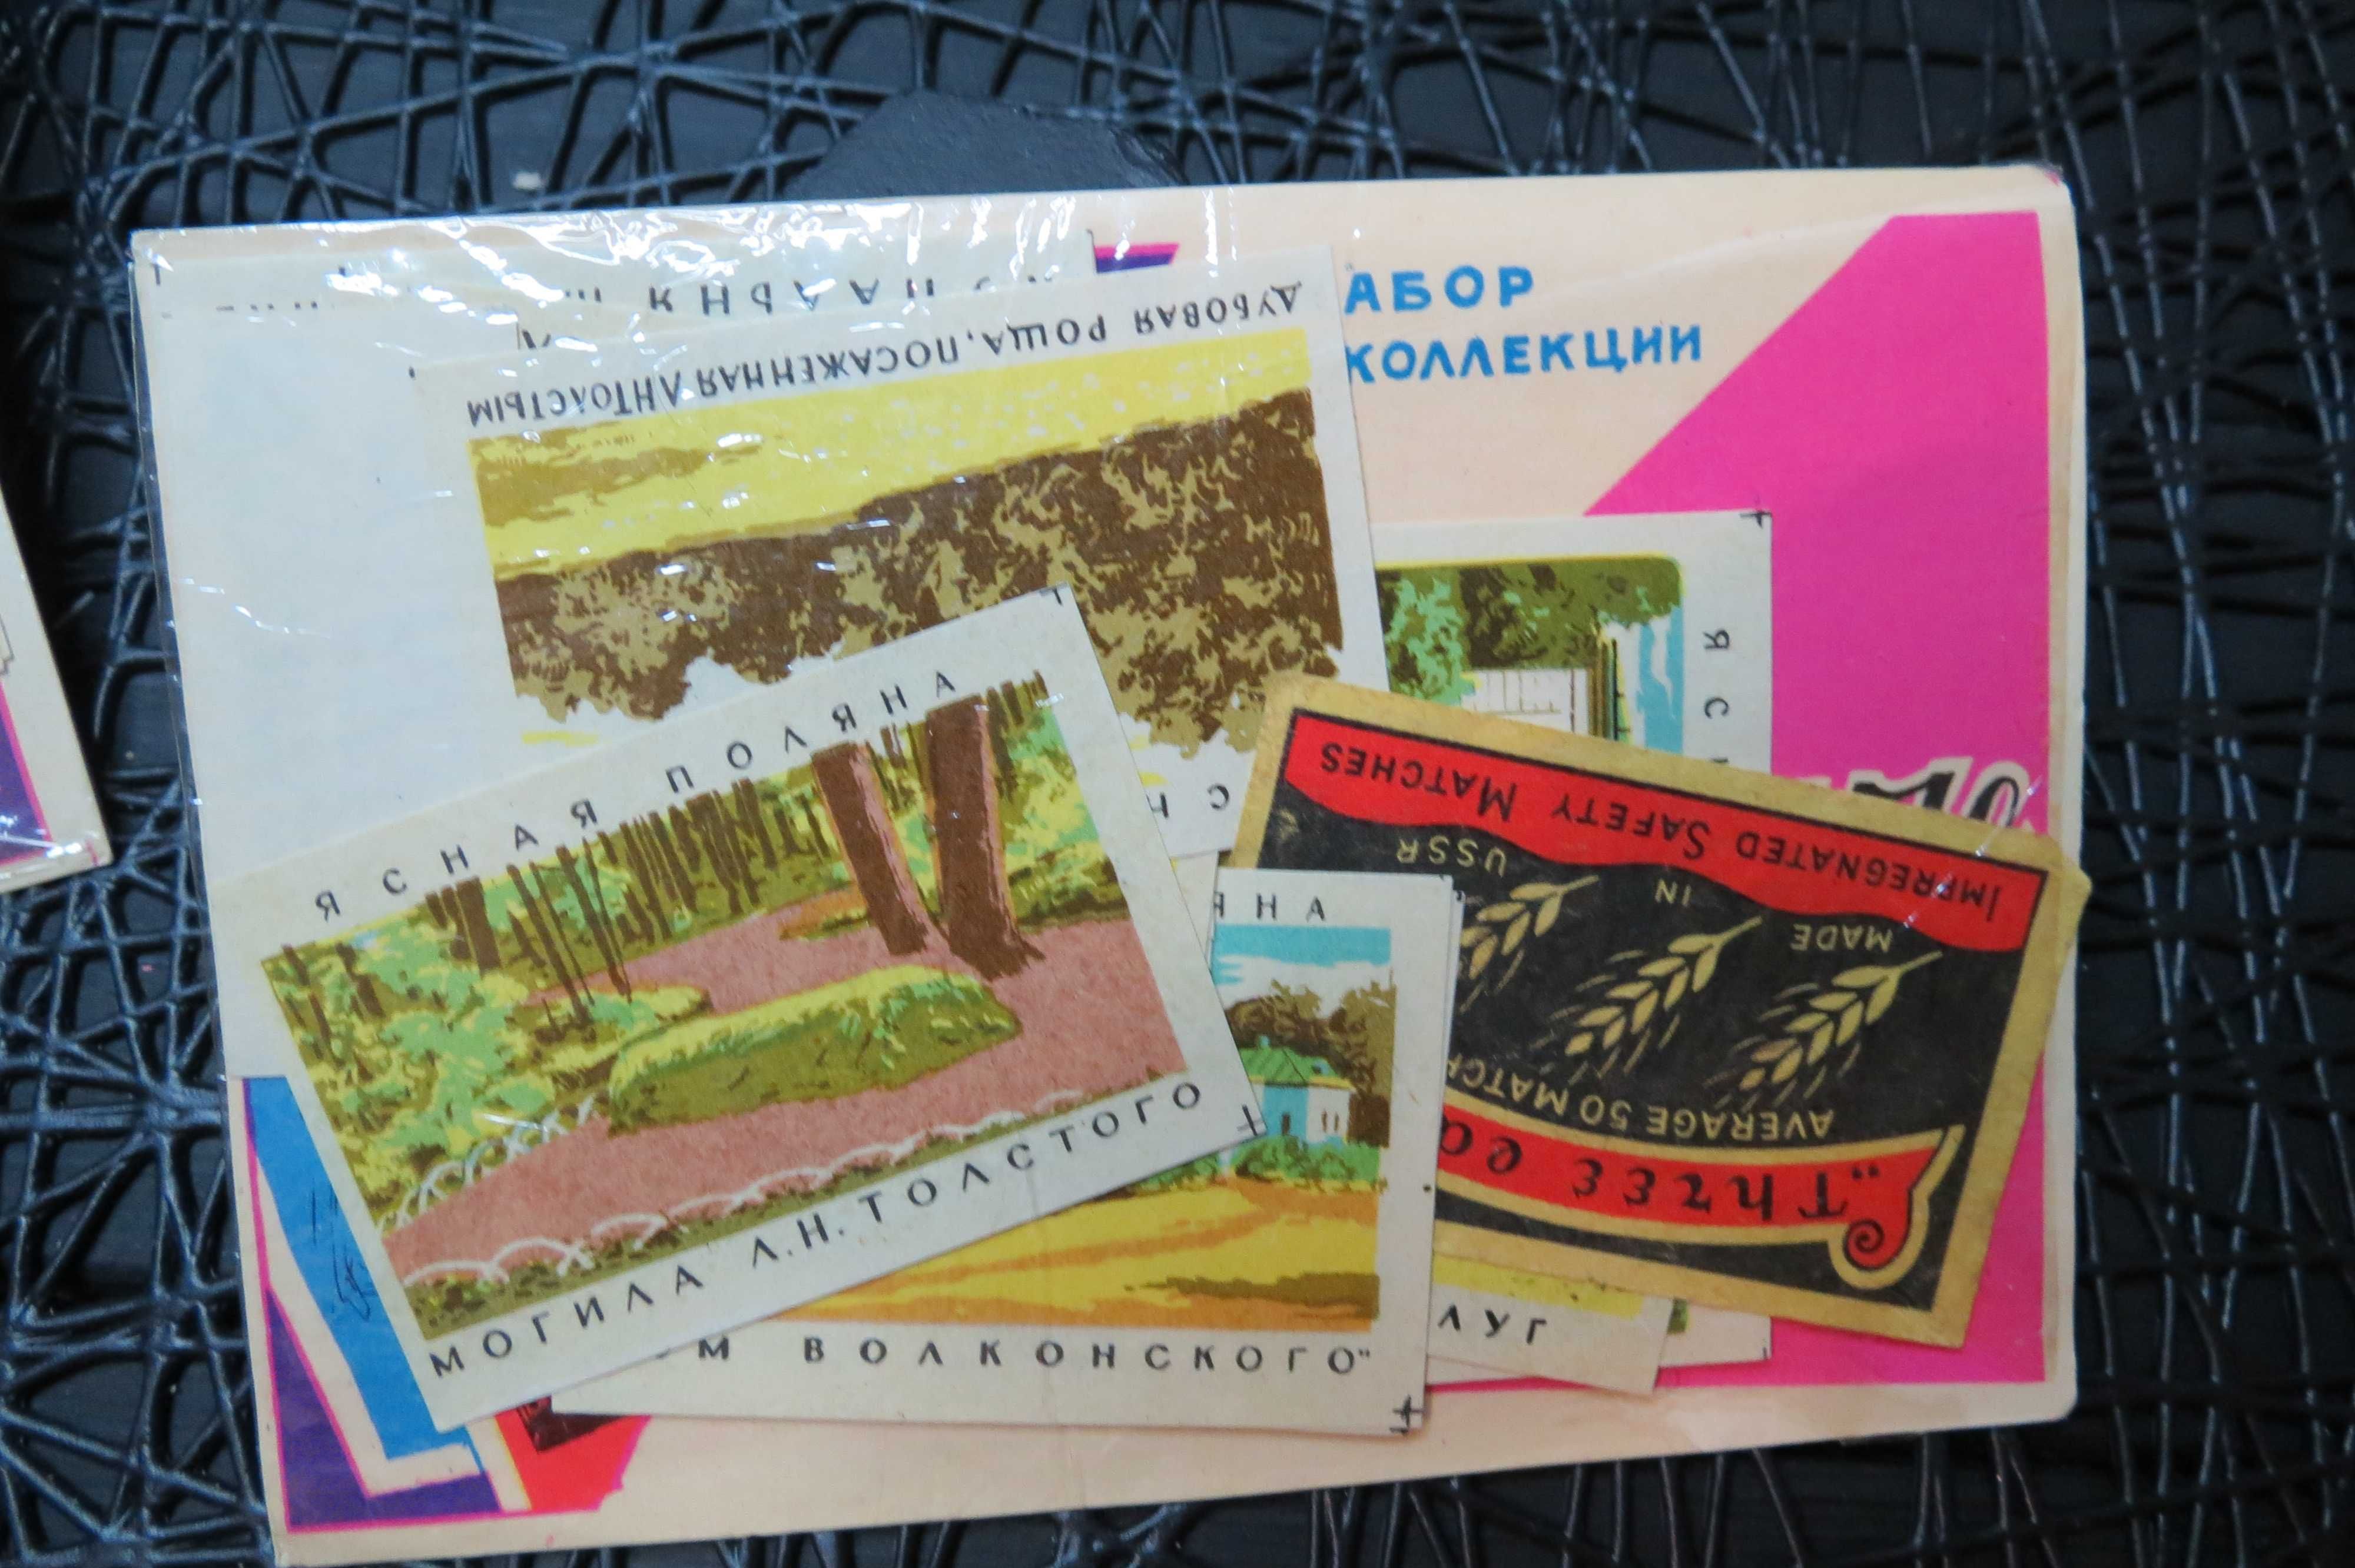 Набор для коллекции этикетки для спичек советские цена за 1 набор